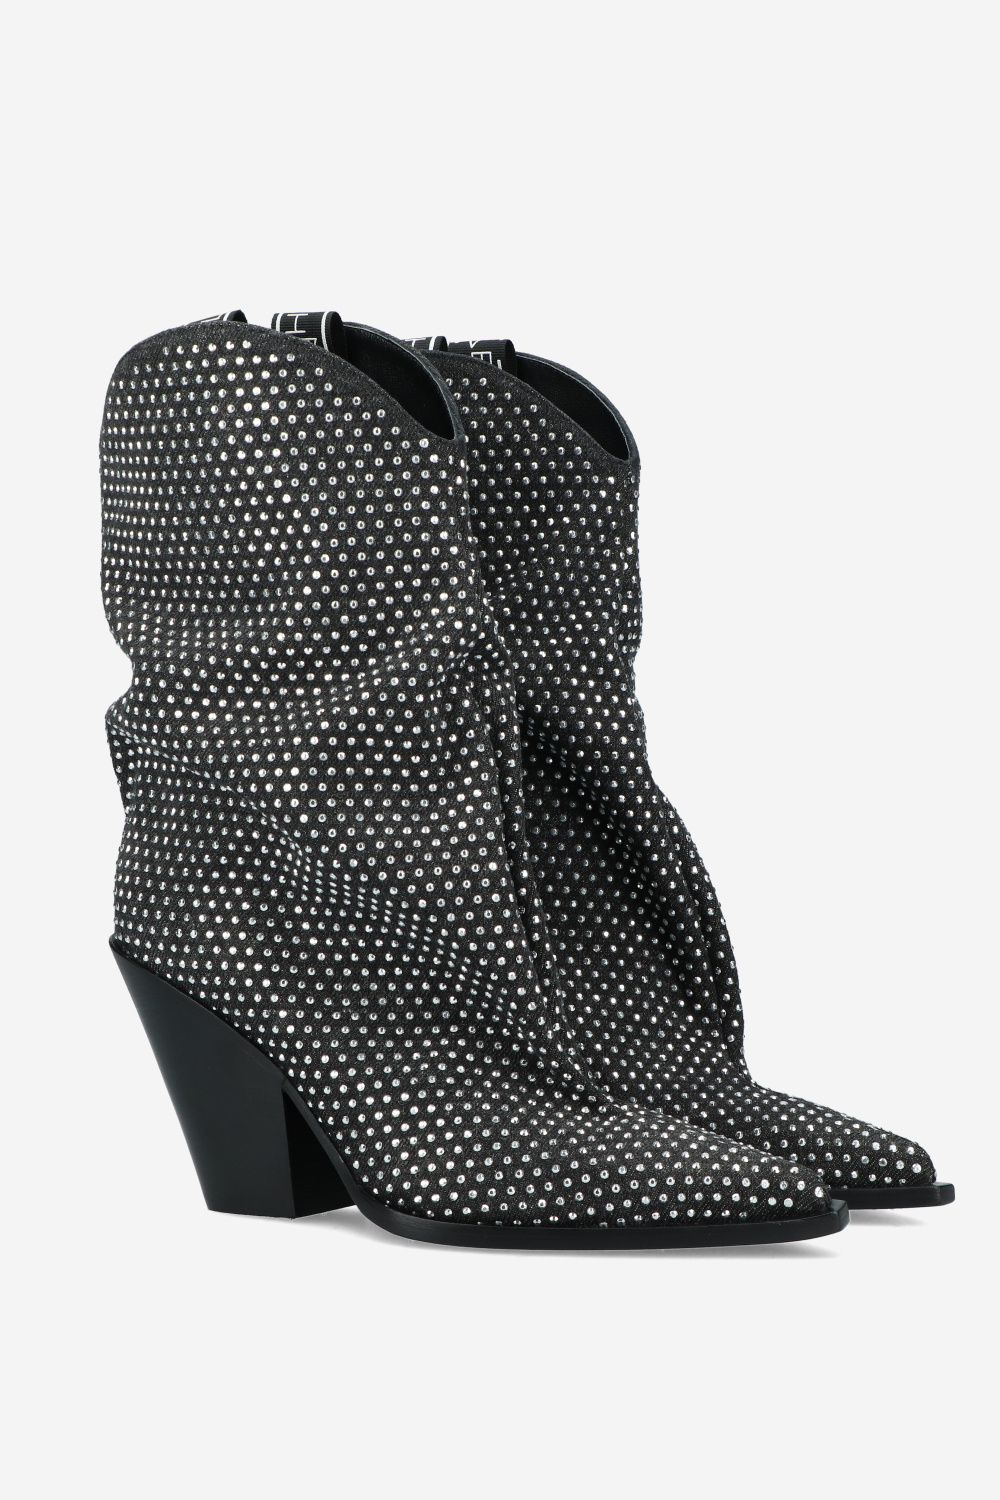 Elena Iachi Boots Grey